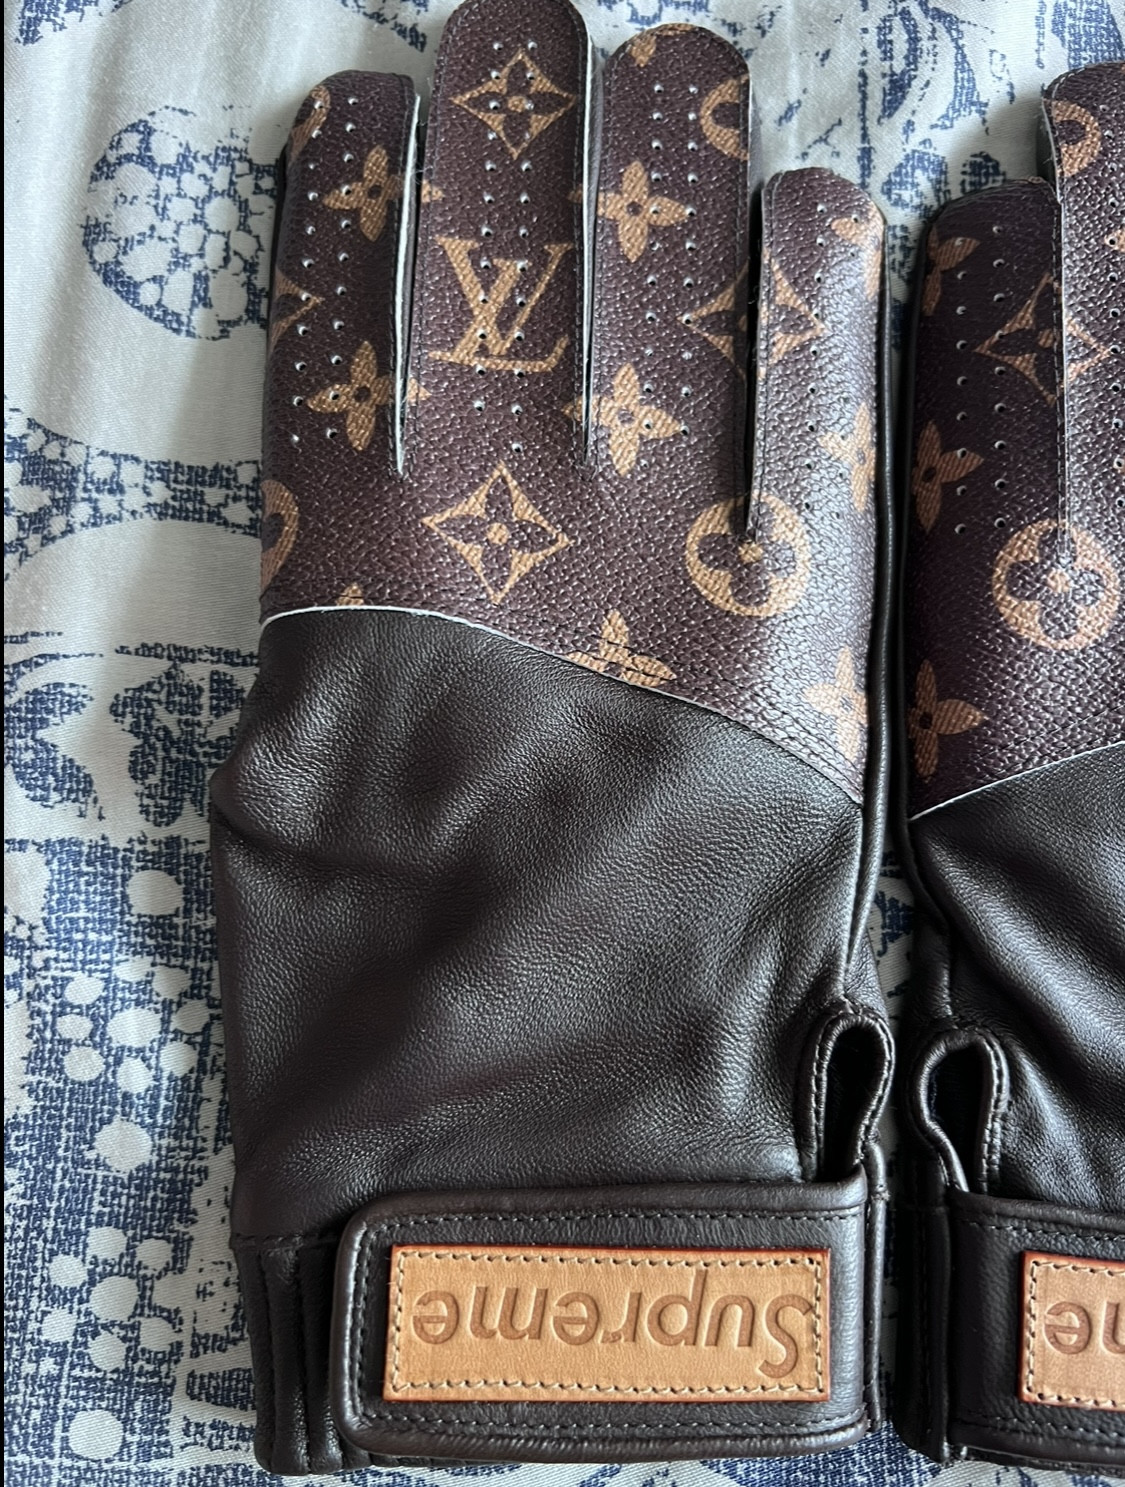 Part 1 - Louis Vuitton - Replica Accessories (Wallets, Belts